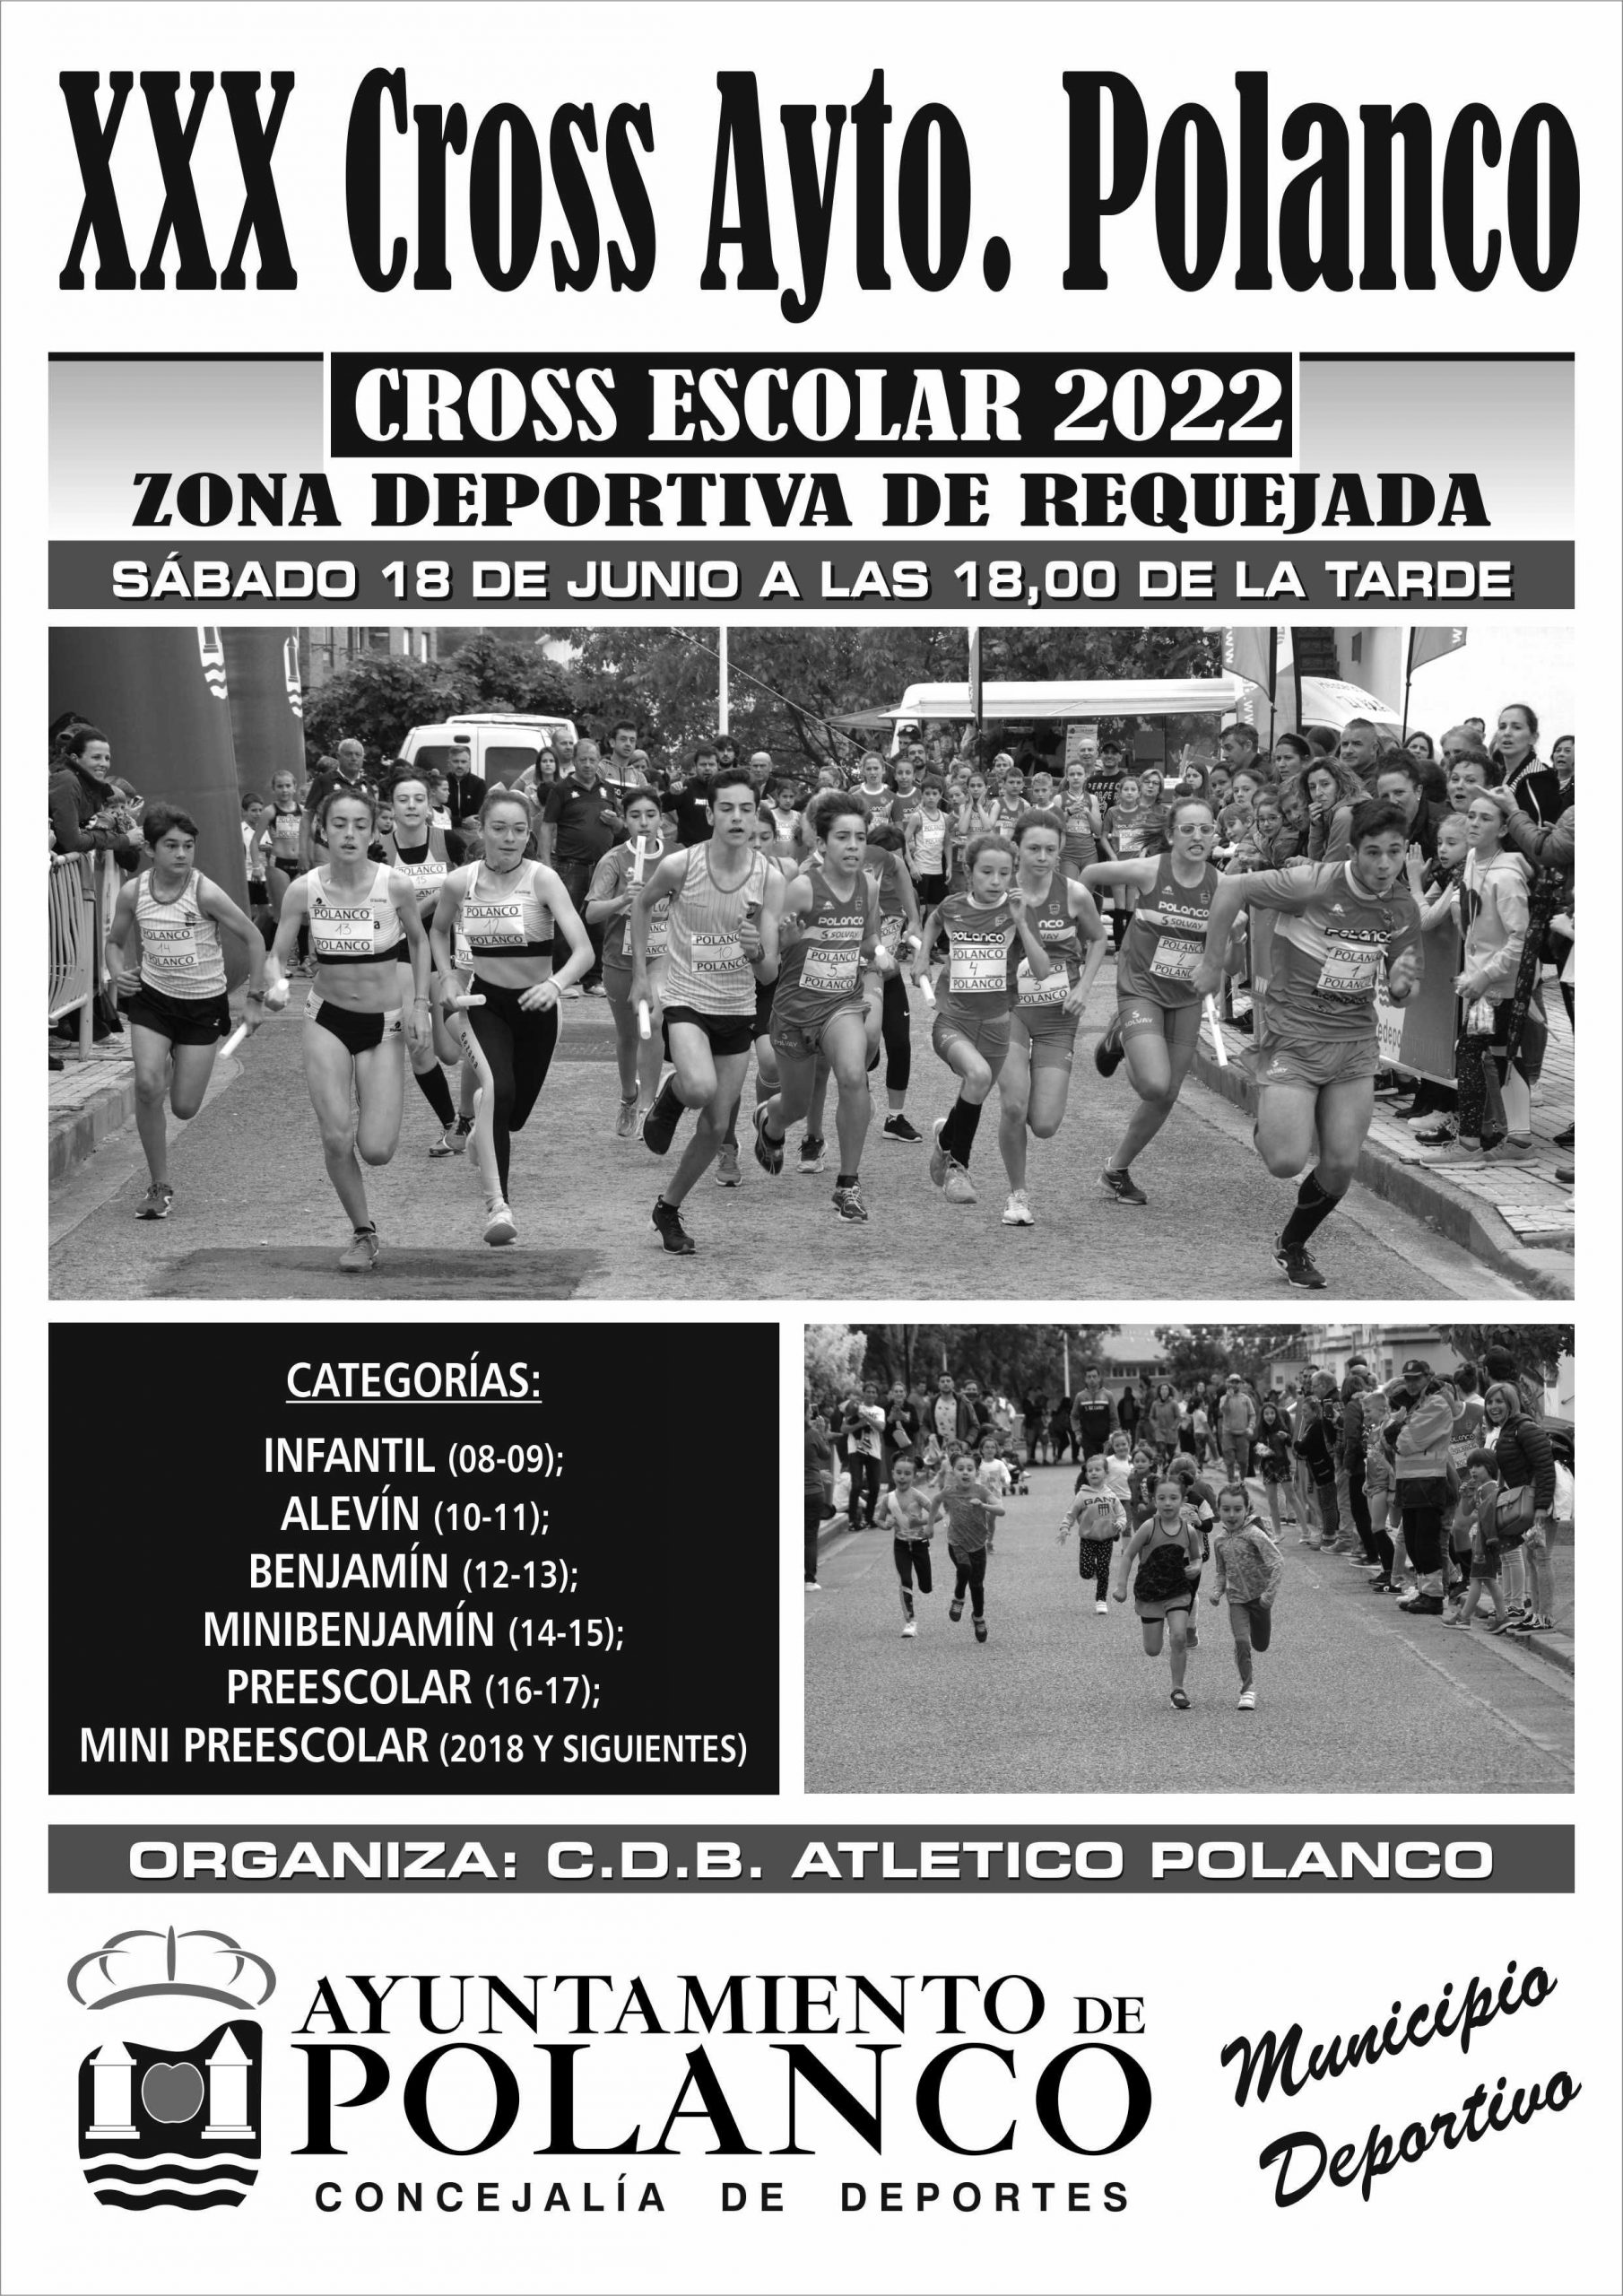 Cartel XXX Cross Ayuntamiento de Polanco